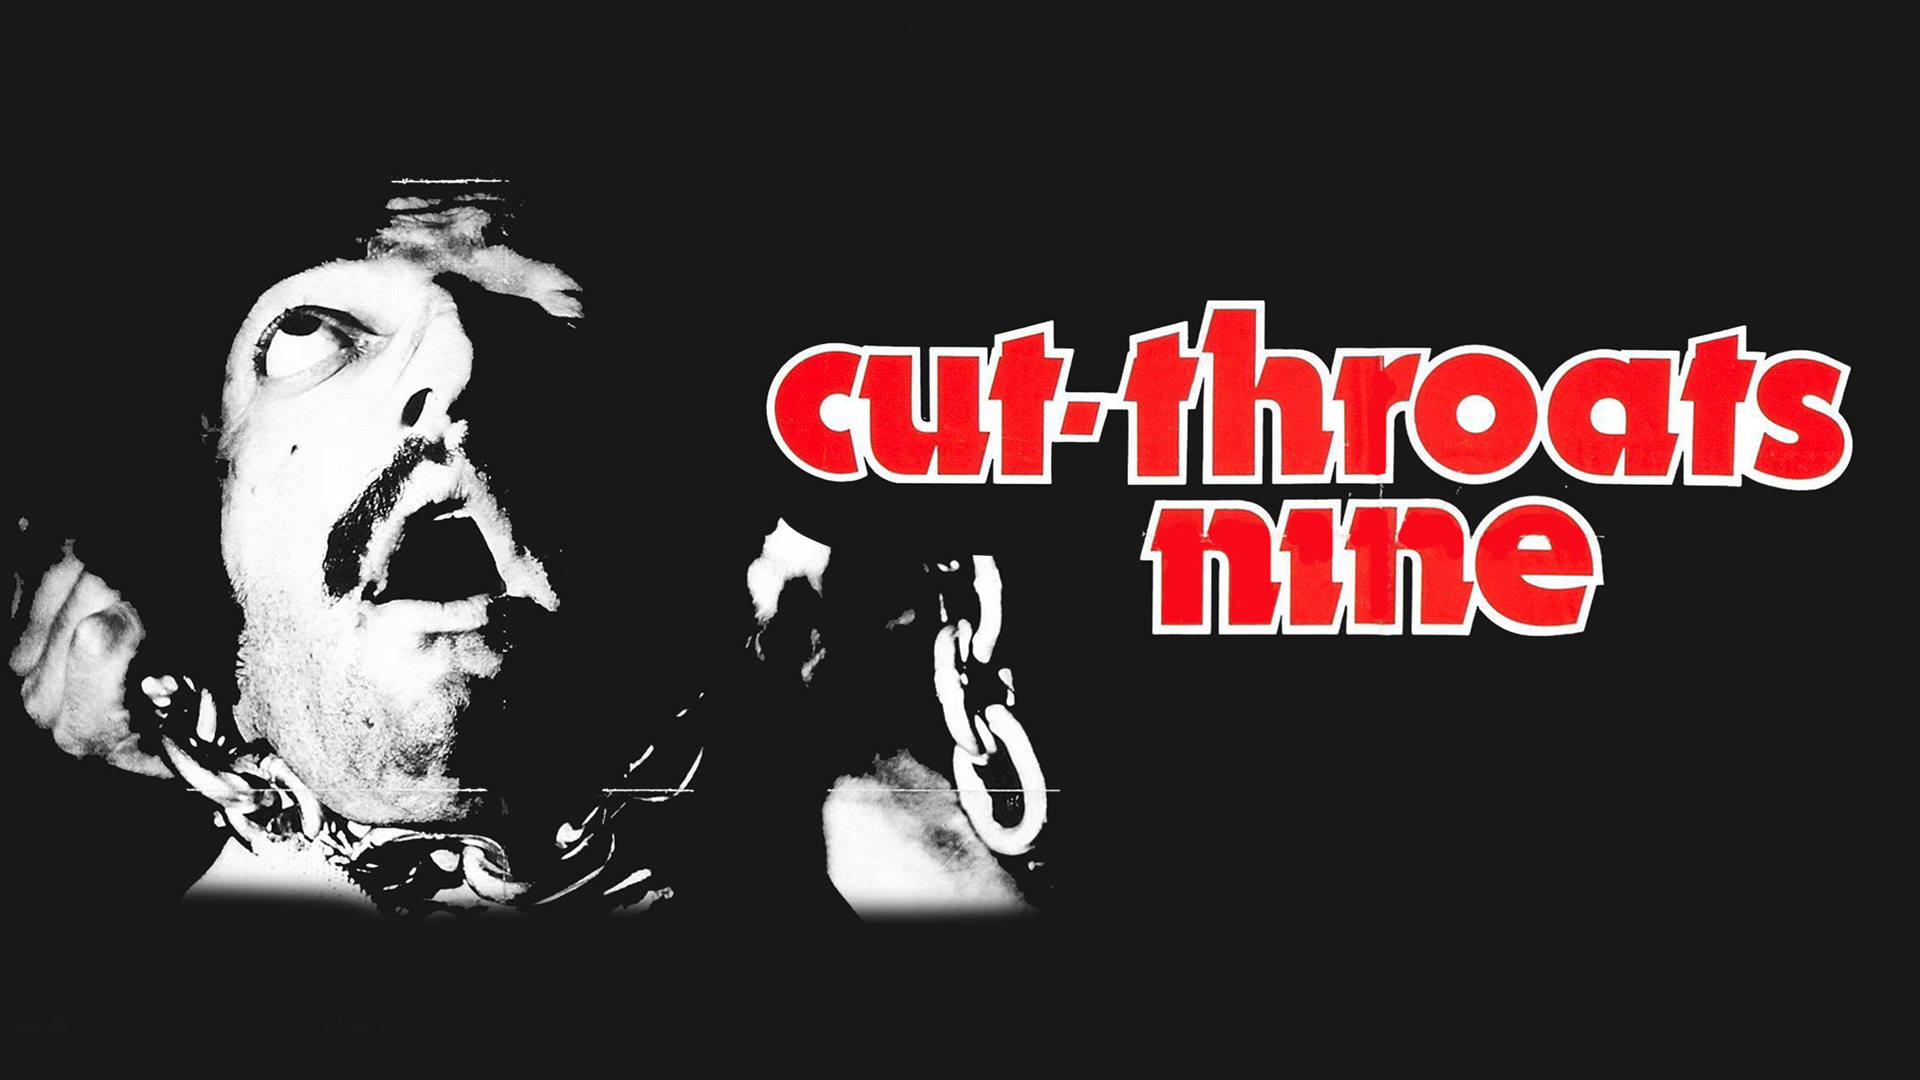 Cut-Throats Nine